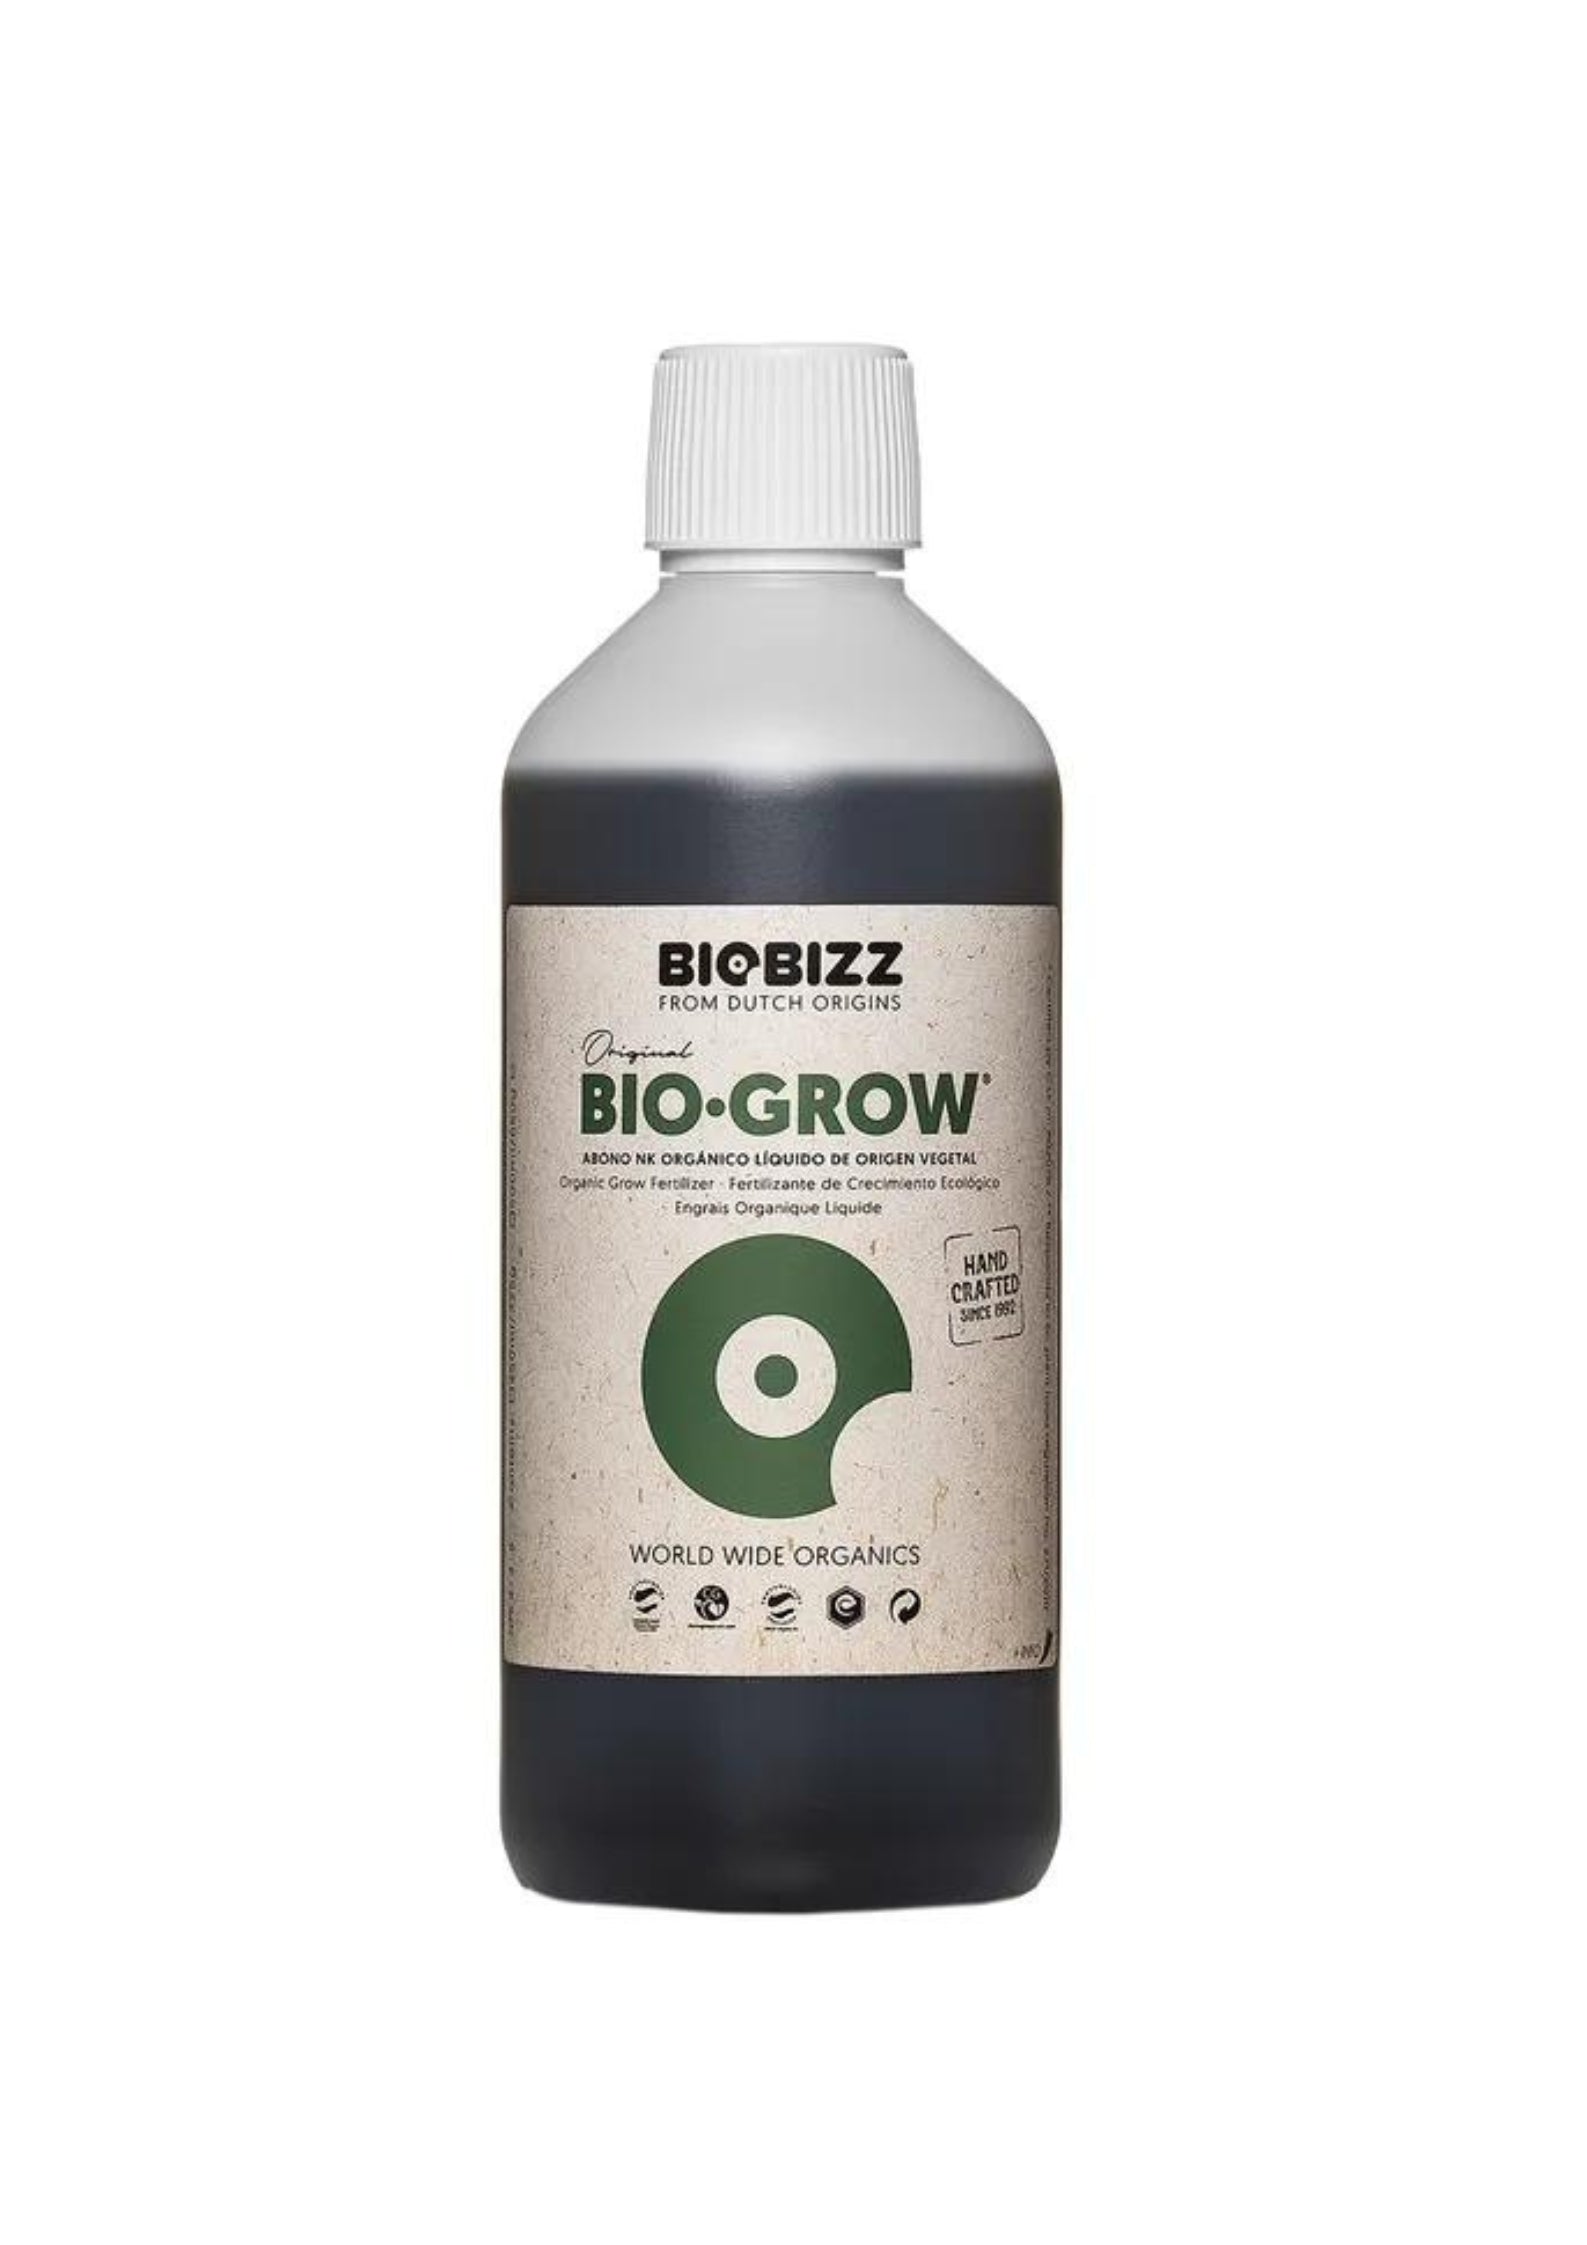 Bio Grow Biobizz